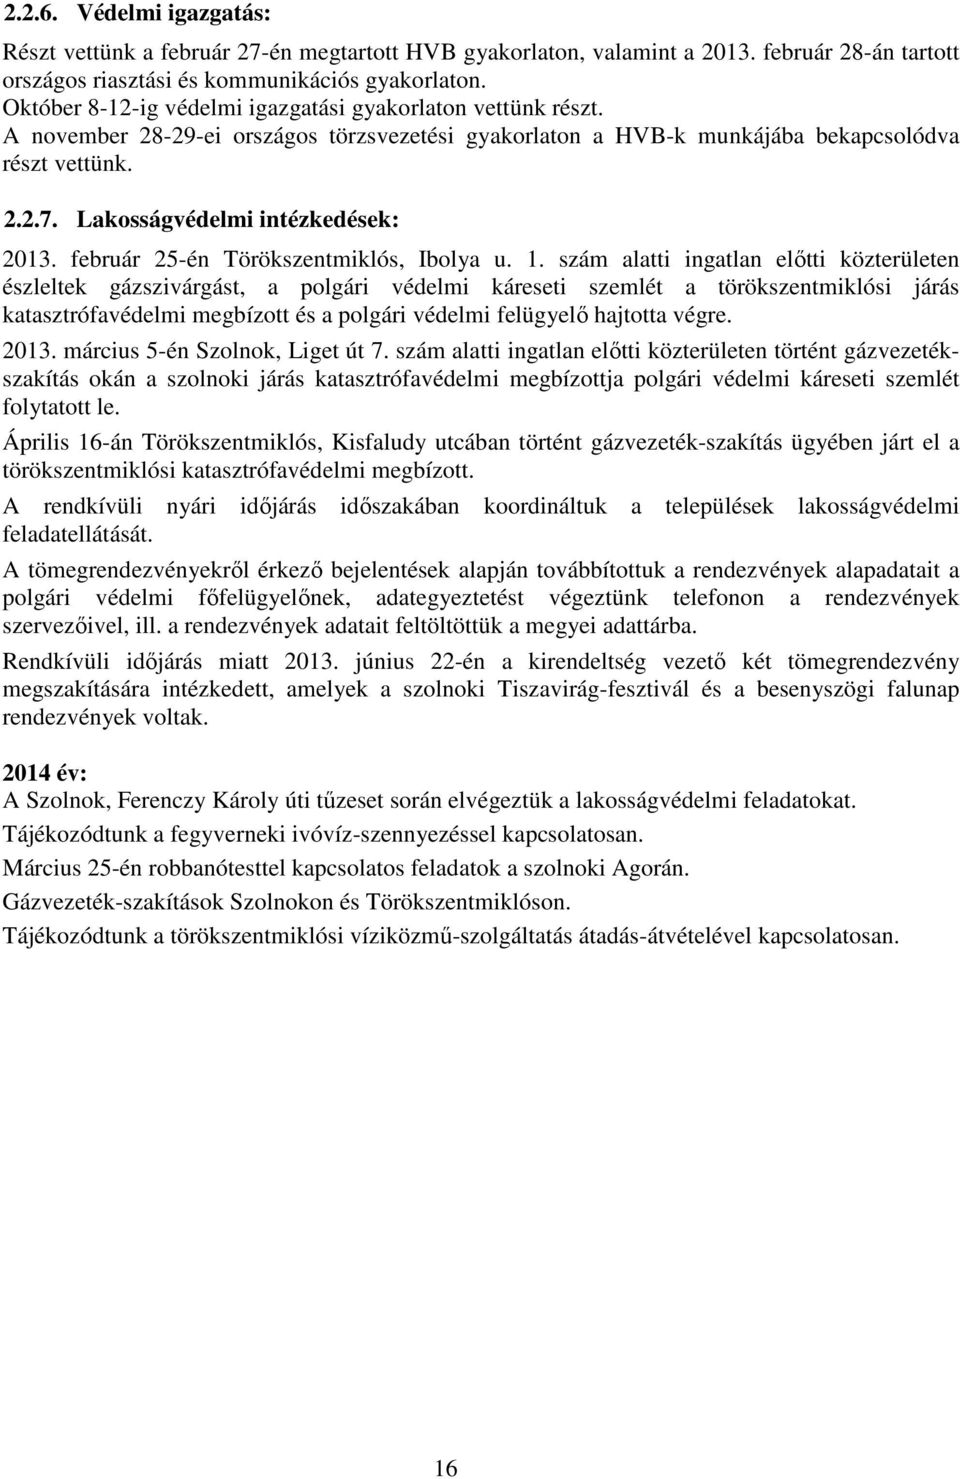 Lakosságvédelmi intézkedések: 2013. február 25-én Törökszentmiklós, Ibolya u. 1.